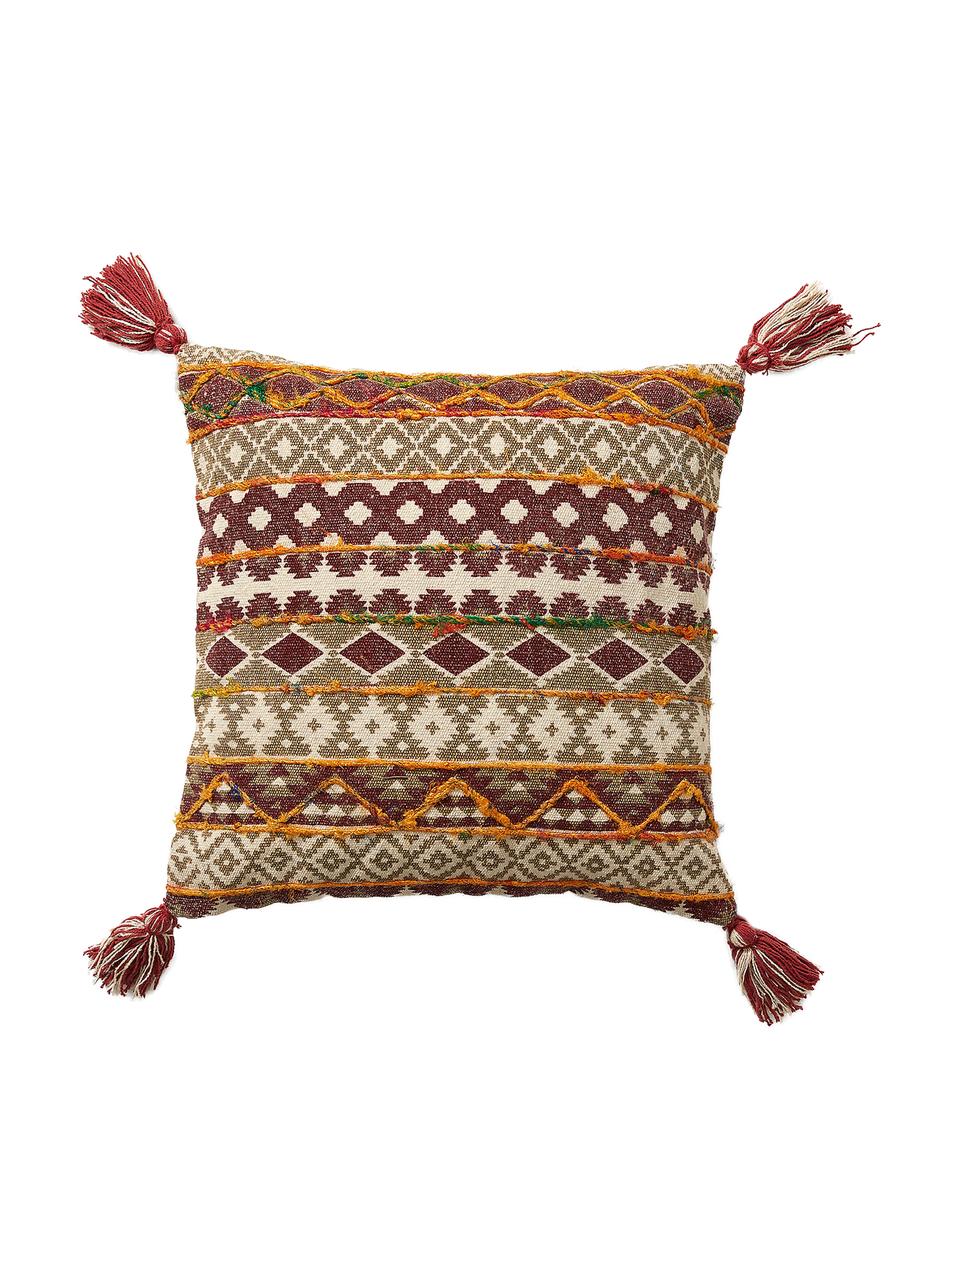 Poszewka na poduszkę z chwostami Mahesana, 100% bawełna, Beżowy, czerwony, żółty, zielony, S 45 x D 45 cm